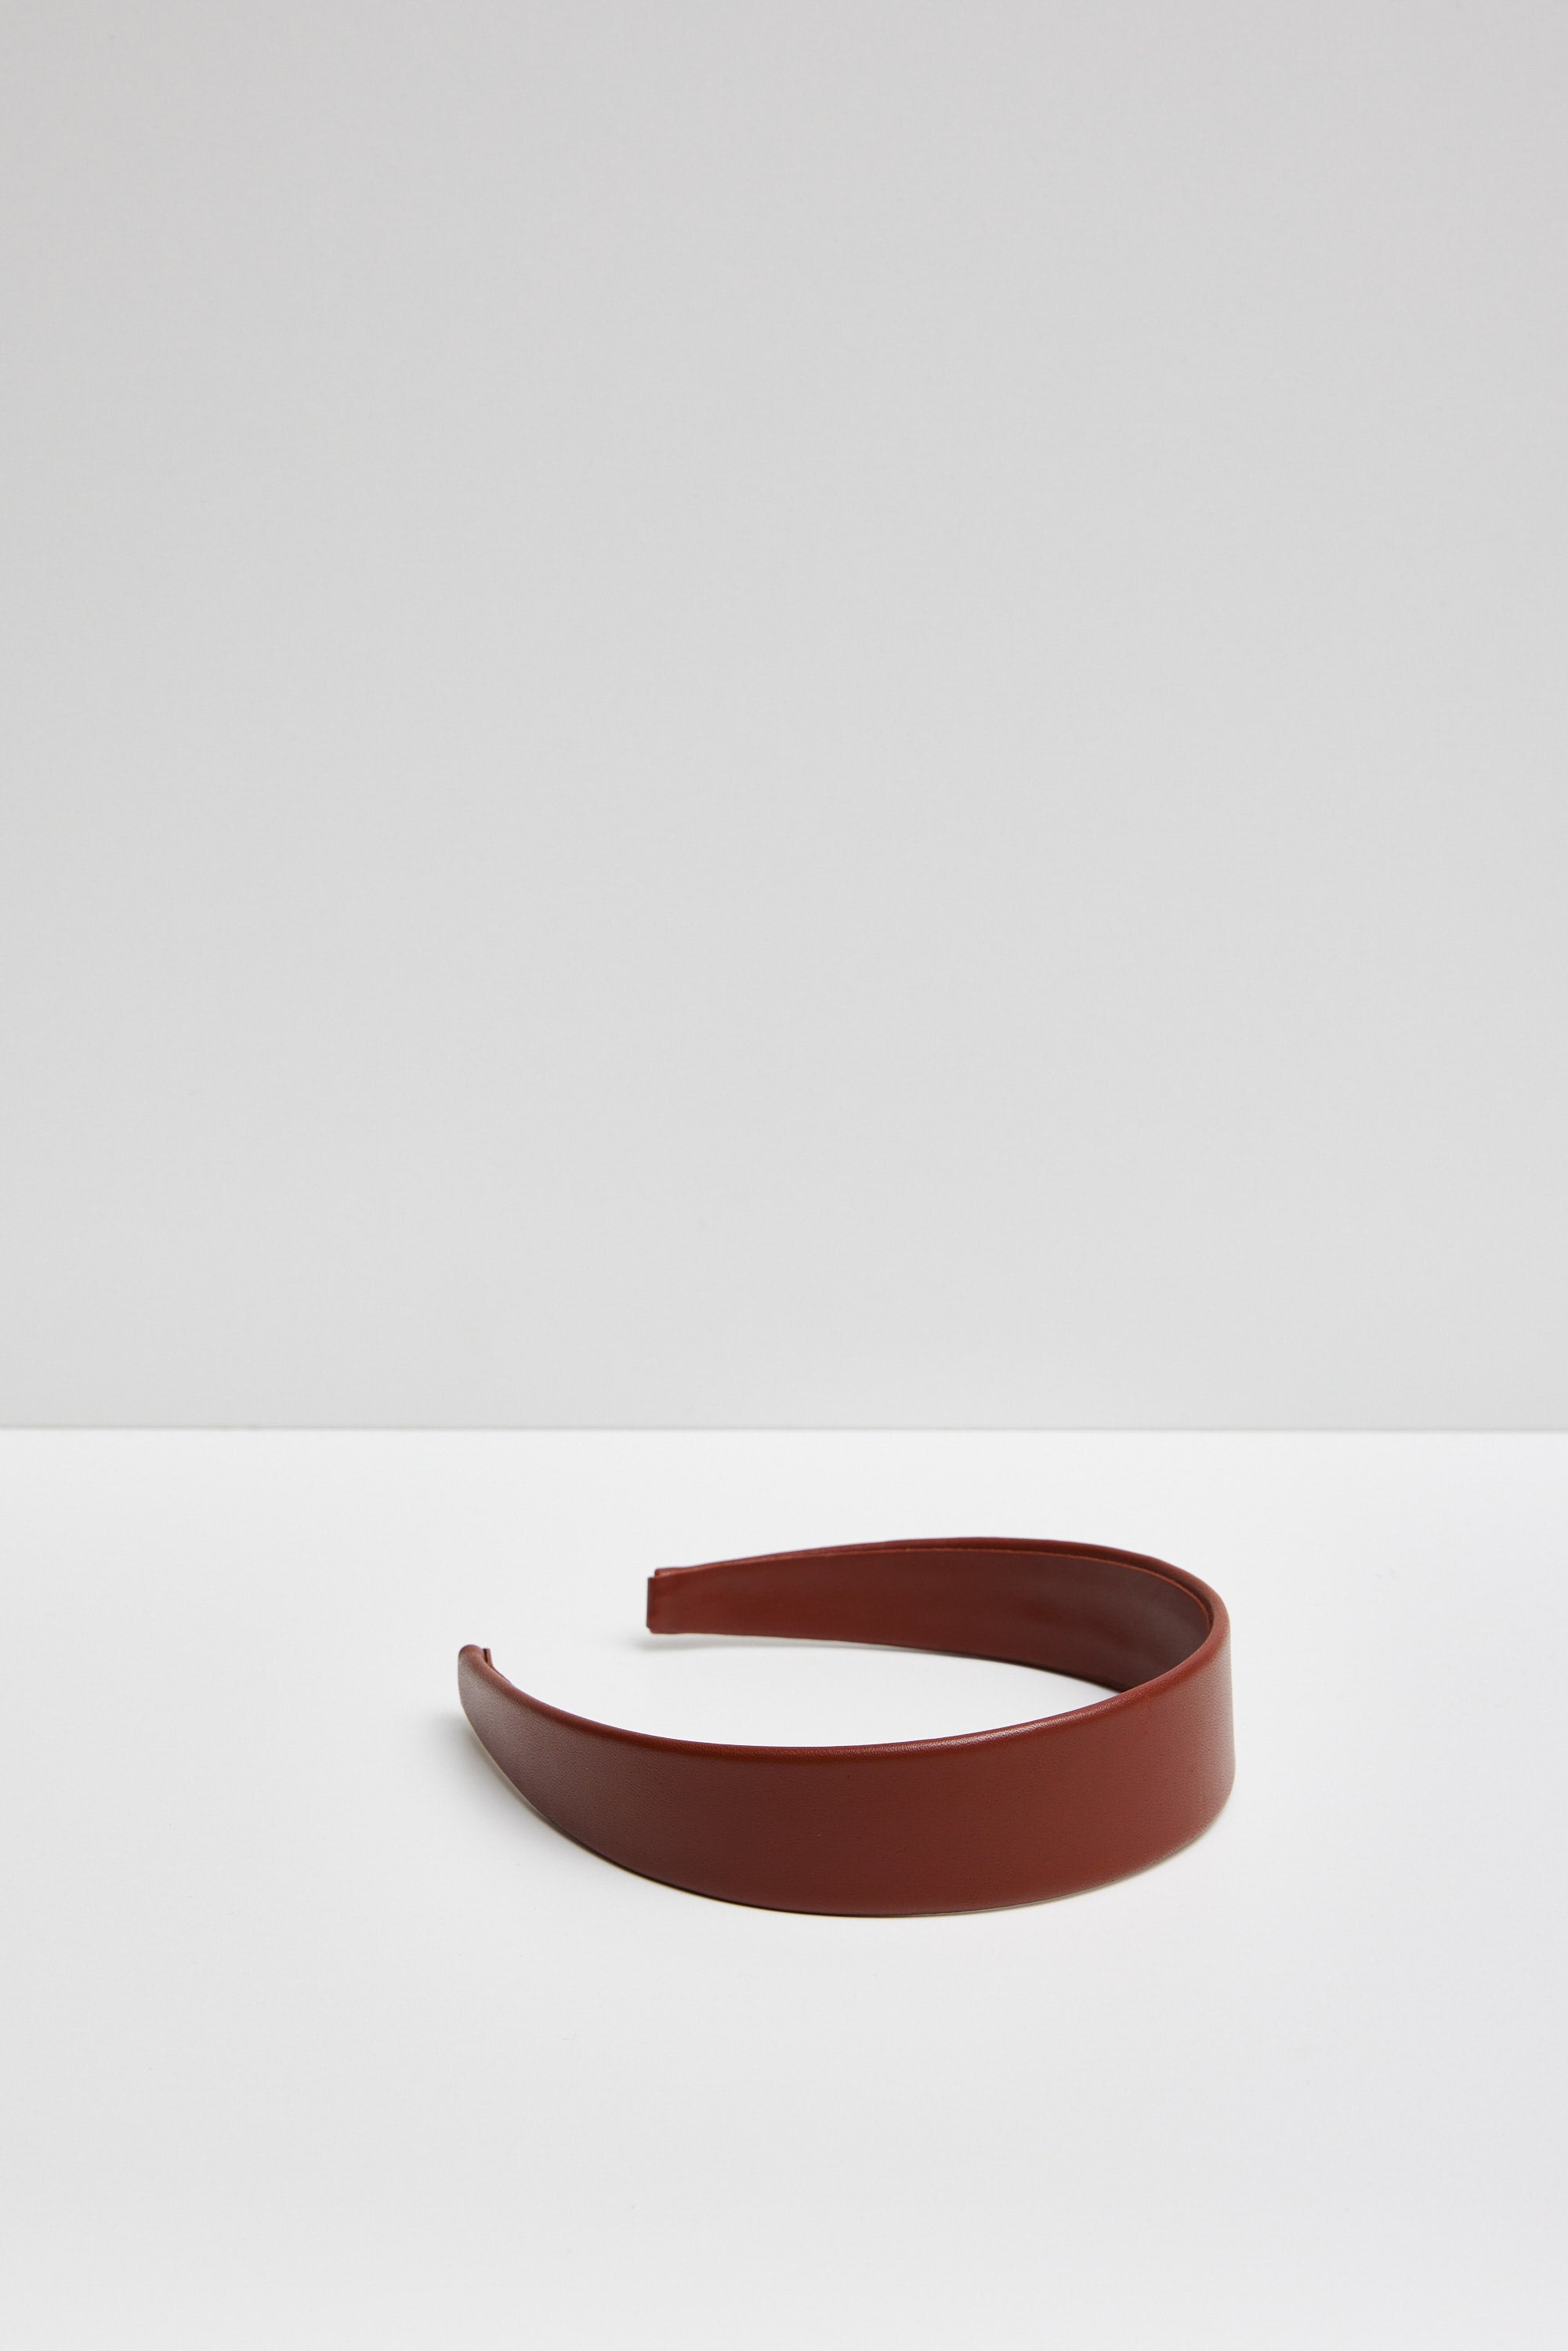 Silken - bandeau minimaliste en cuir - 4 options de couleur